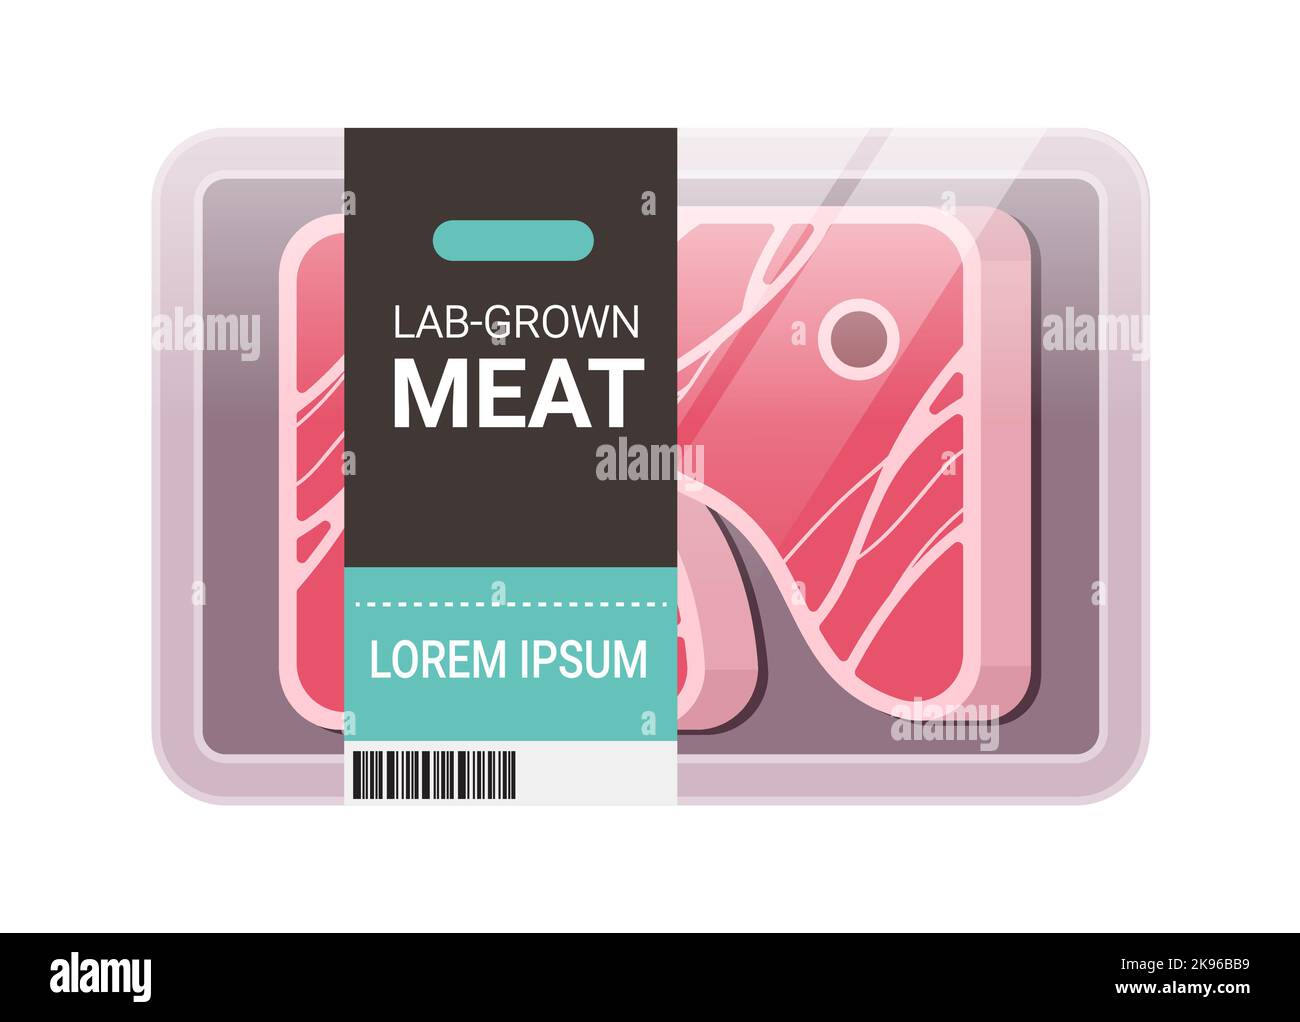 Kultiviert rohes rotes Fleisch Pack Kunststoff-Schale Behälter Steak aus tierischen Zellen künstlichen Labor gewachsen Fleisch Produktionskonzept Stock Vektor